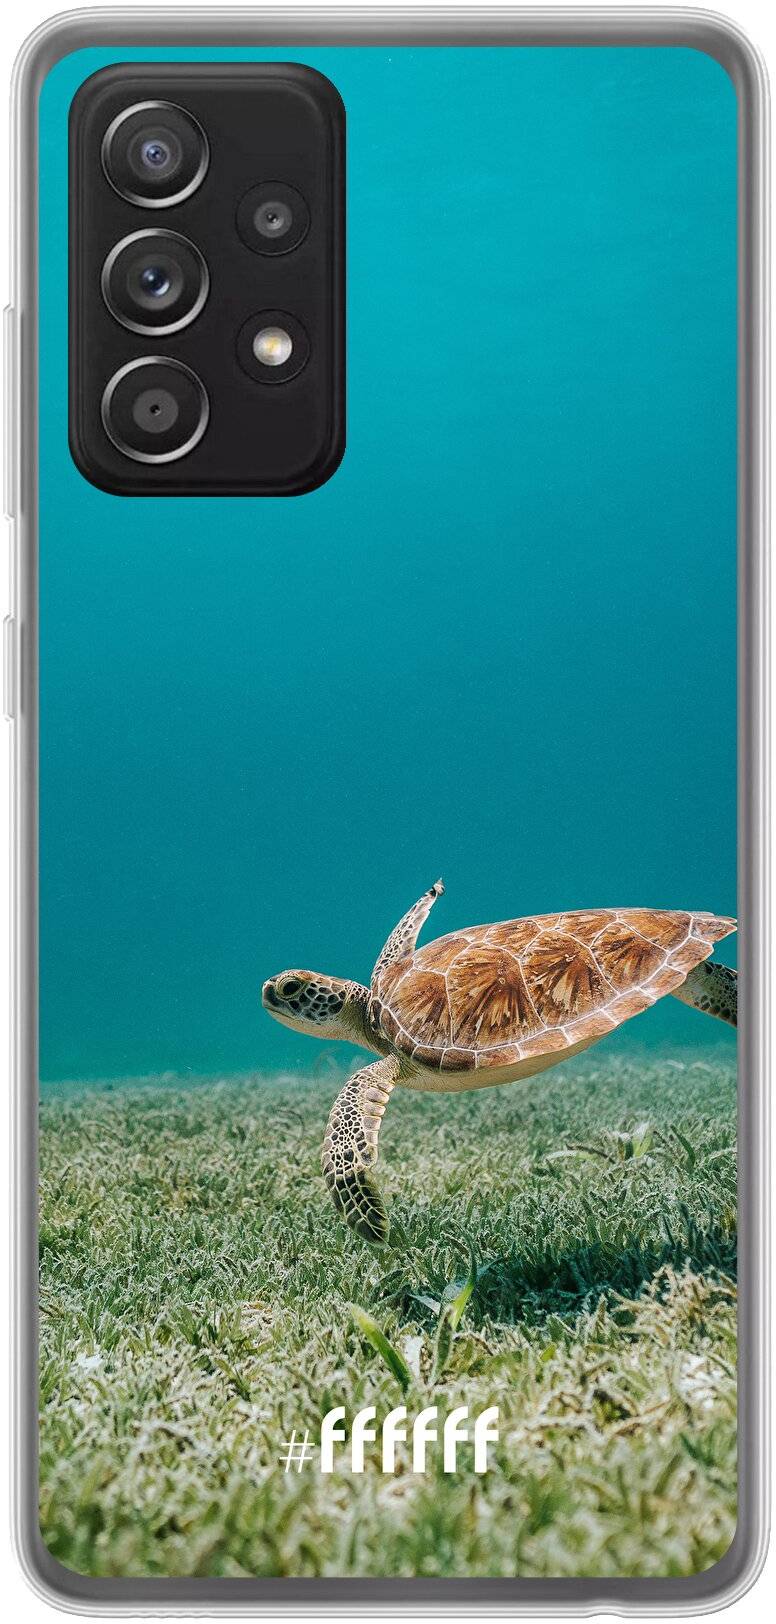 Turtle Galaxy A52